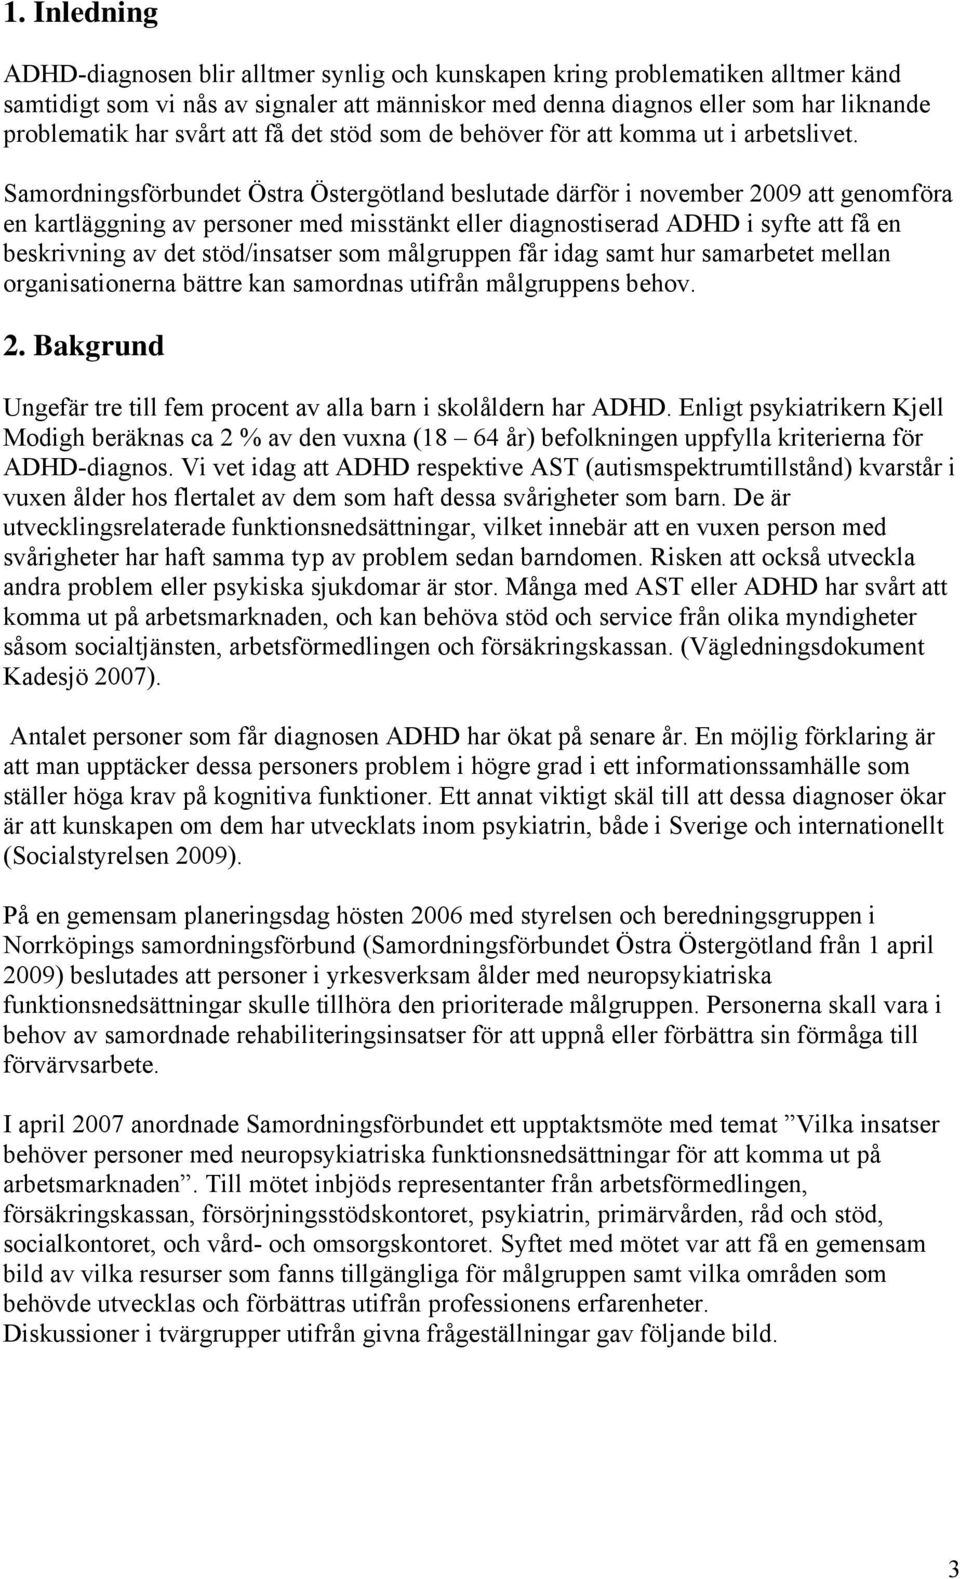 Samordningsförbundet Östra Östergötland beslutade därför i november 2009 att genomföra en kartläggning av personer med misstänkt eller diagnostiserad ADHD i syfte att få en beskrivning av det